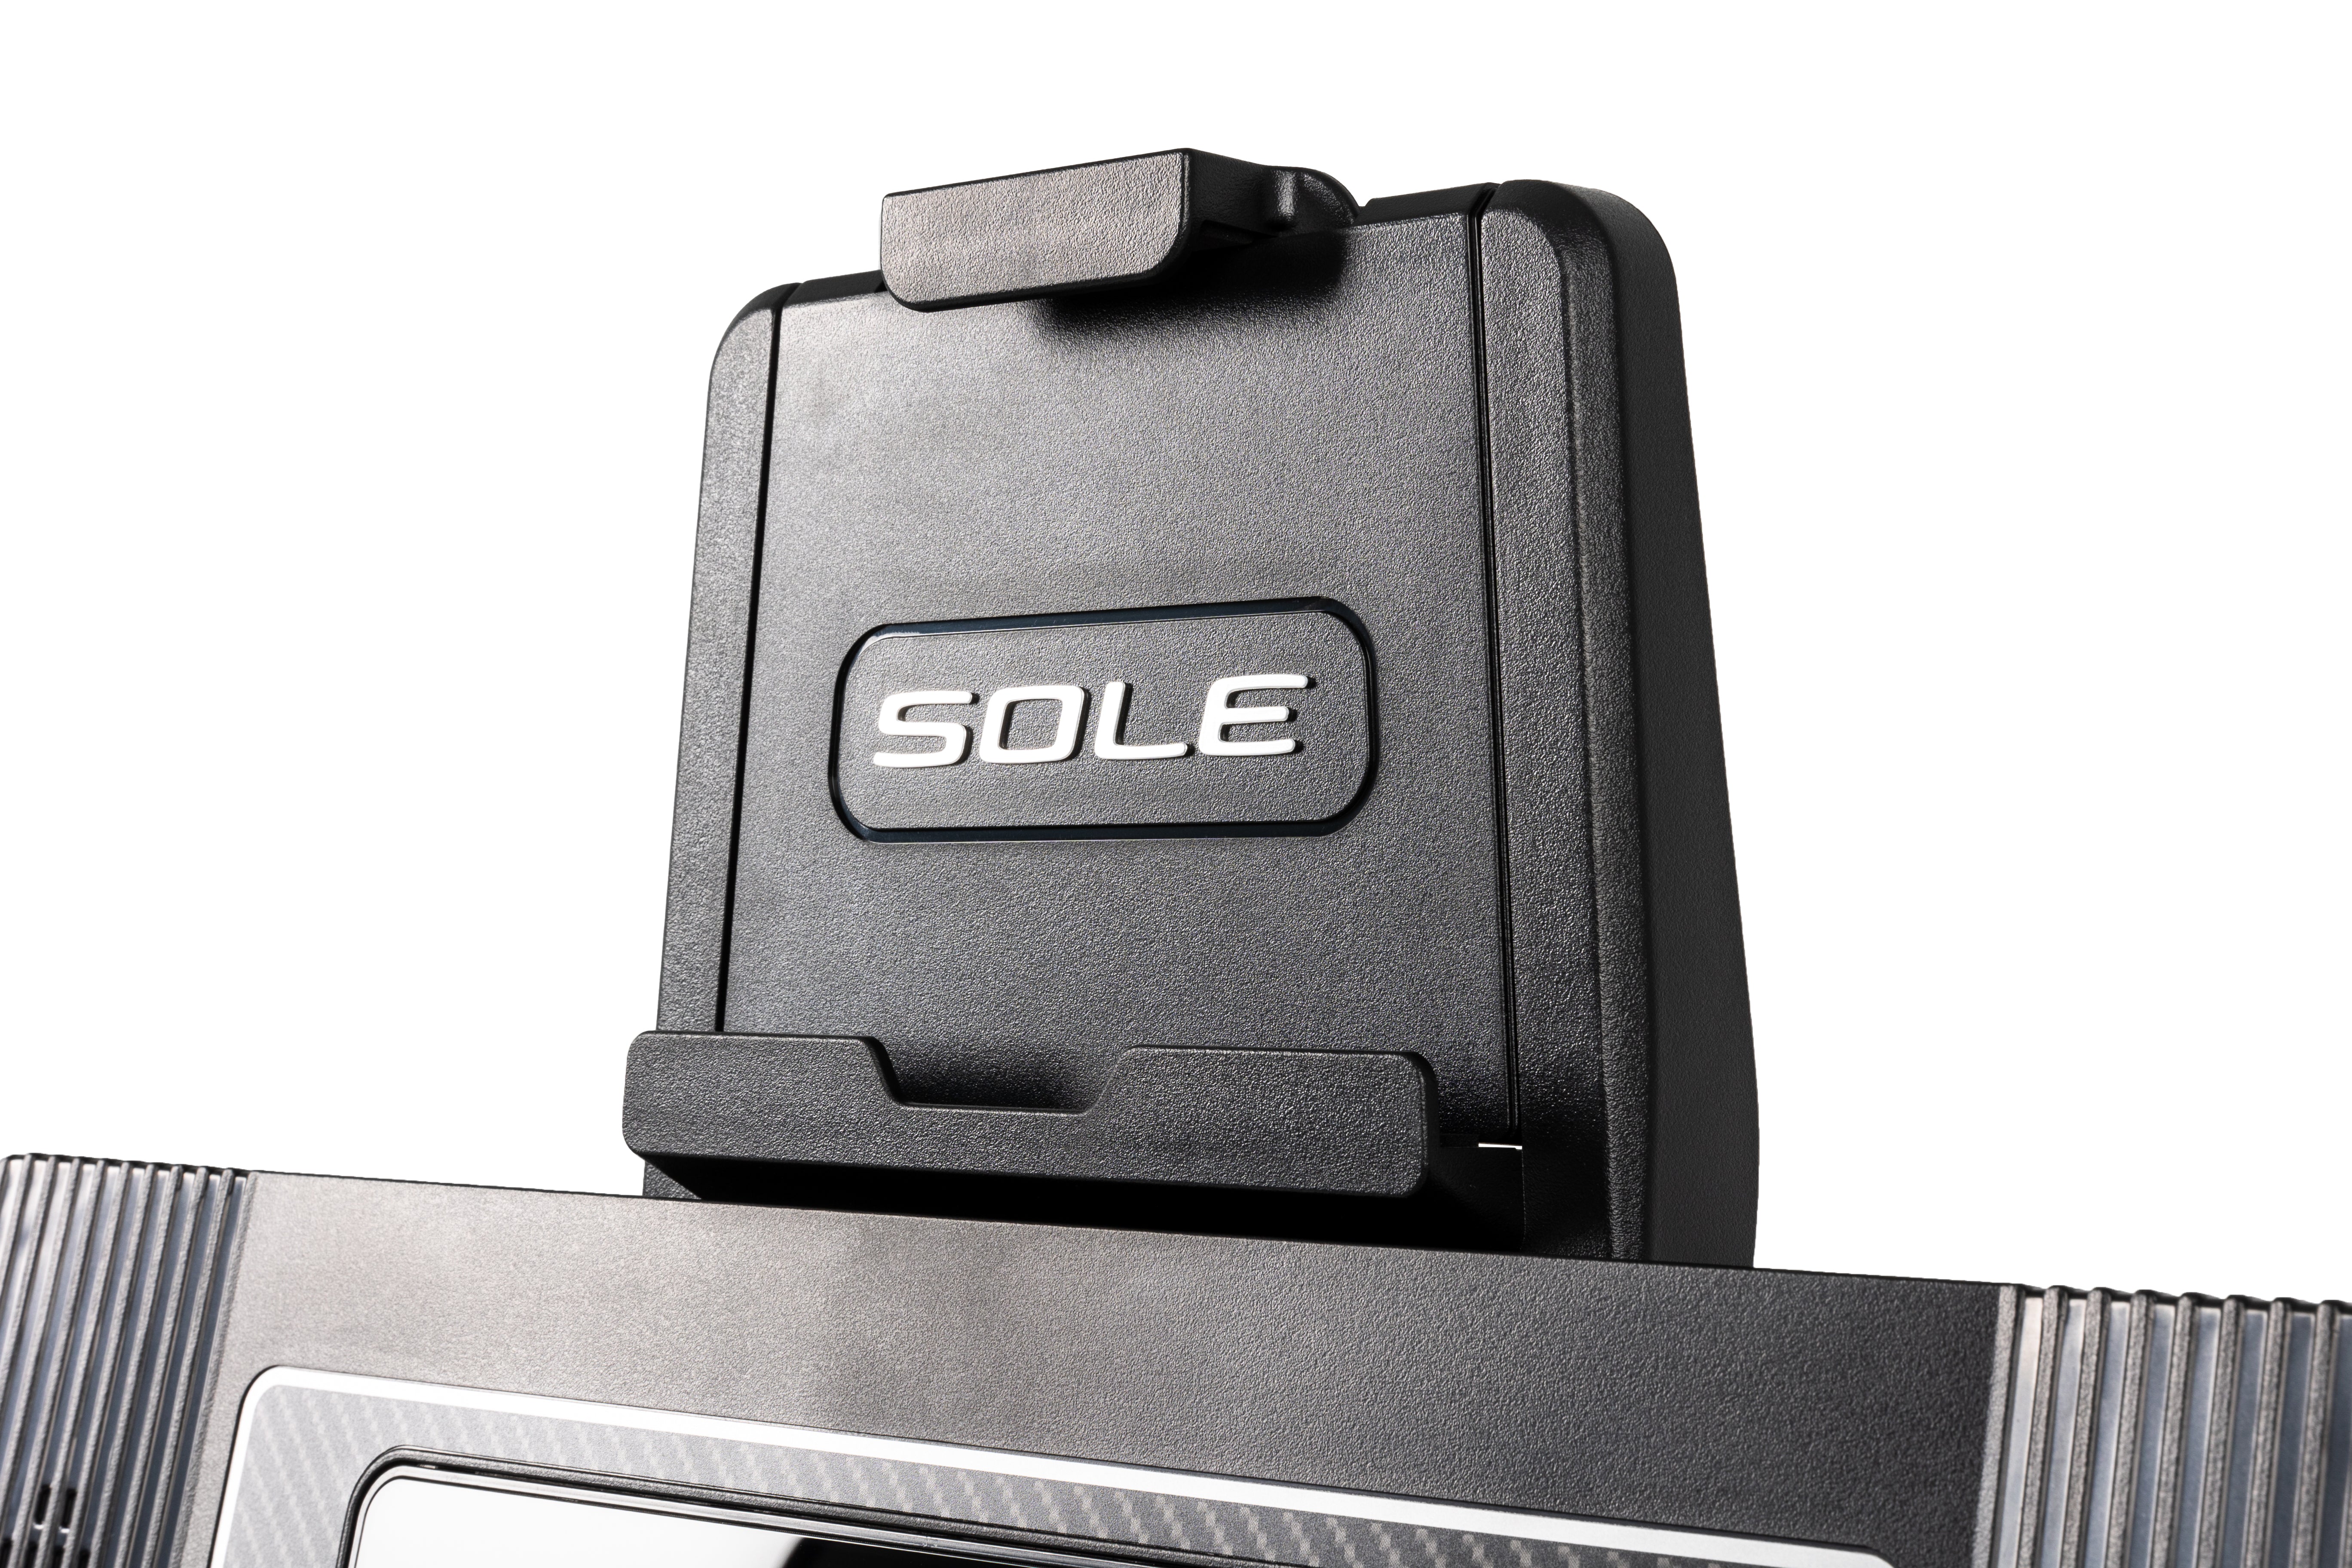 SOLE SB1200 - Cyber Week SALE